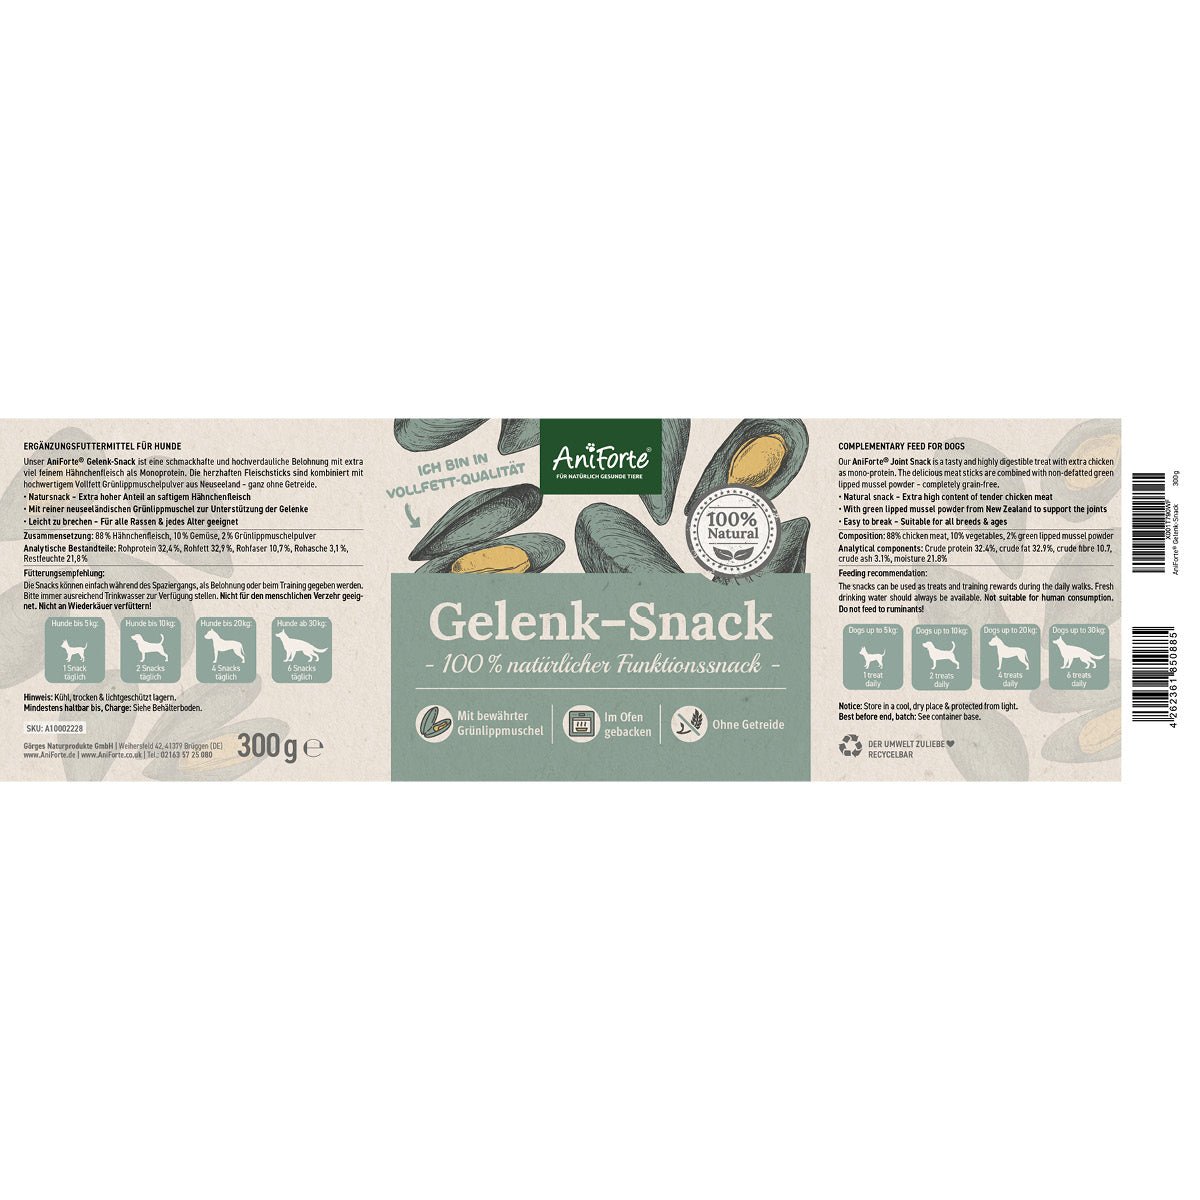 Gelenk-Snack Etikett mit Zusammensetzung, Fütterung und Details